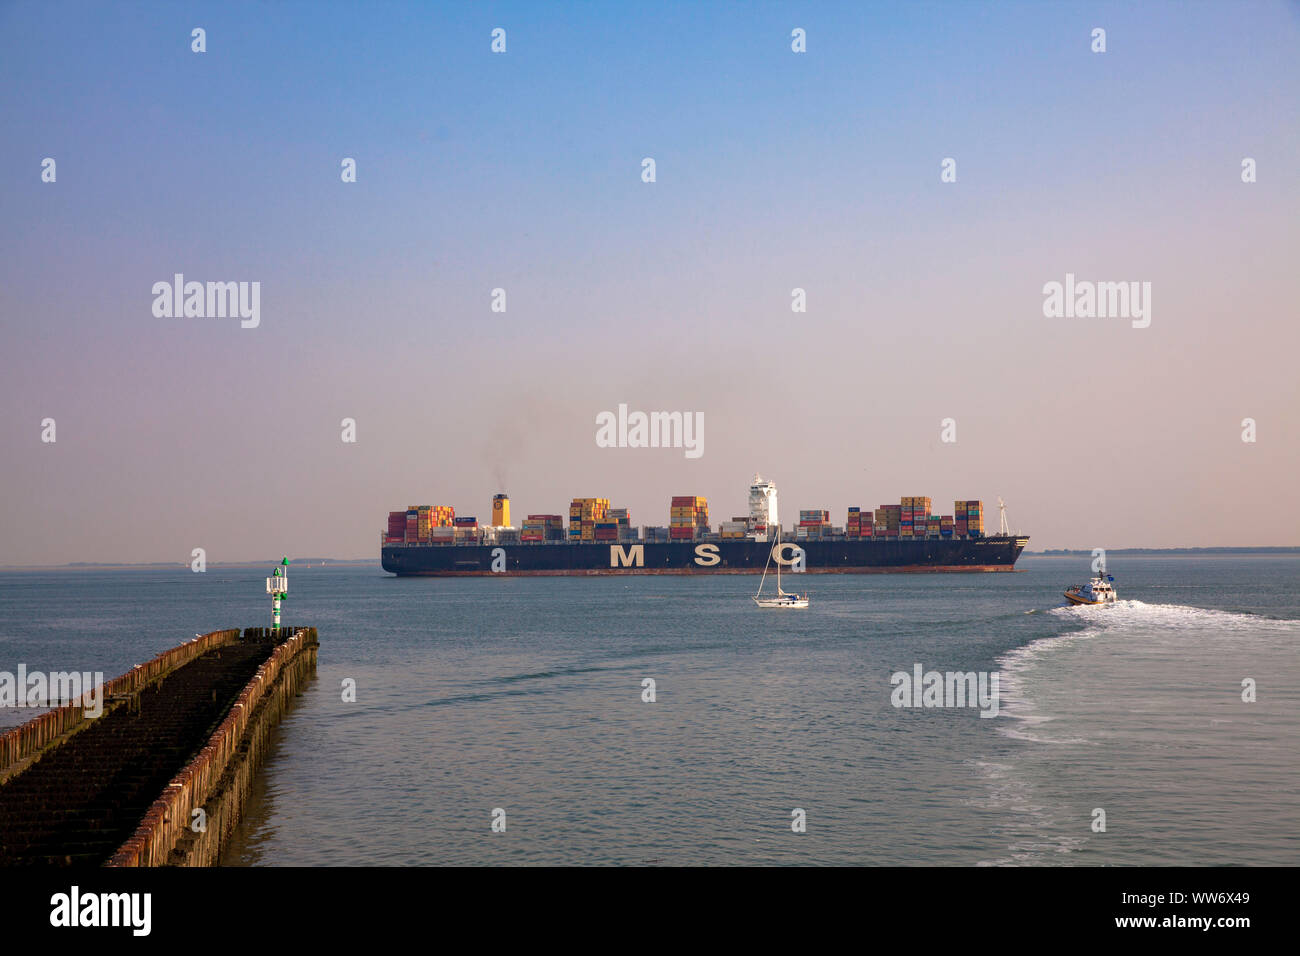 Containerschiff auf der Westerschelde vor der Küste von Vlissingen, Walcheren, Zeeland, Niederlande. Containerschiff auf der Westerschelde vor Vlissin Stockfoto